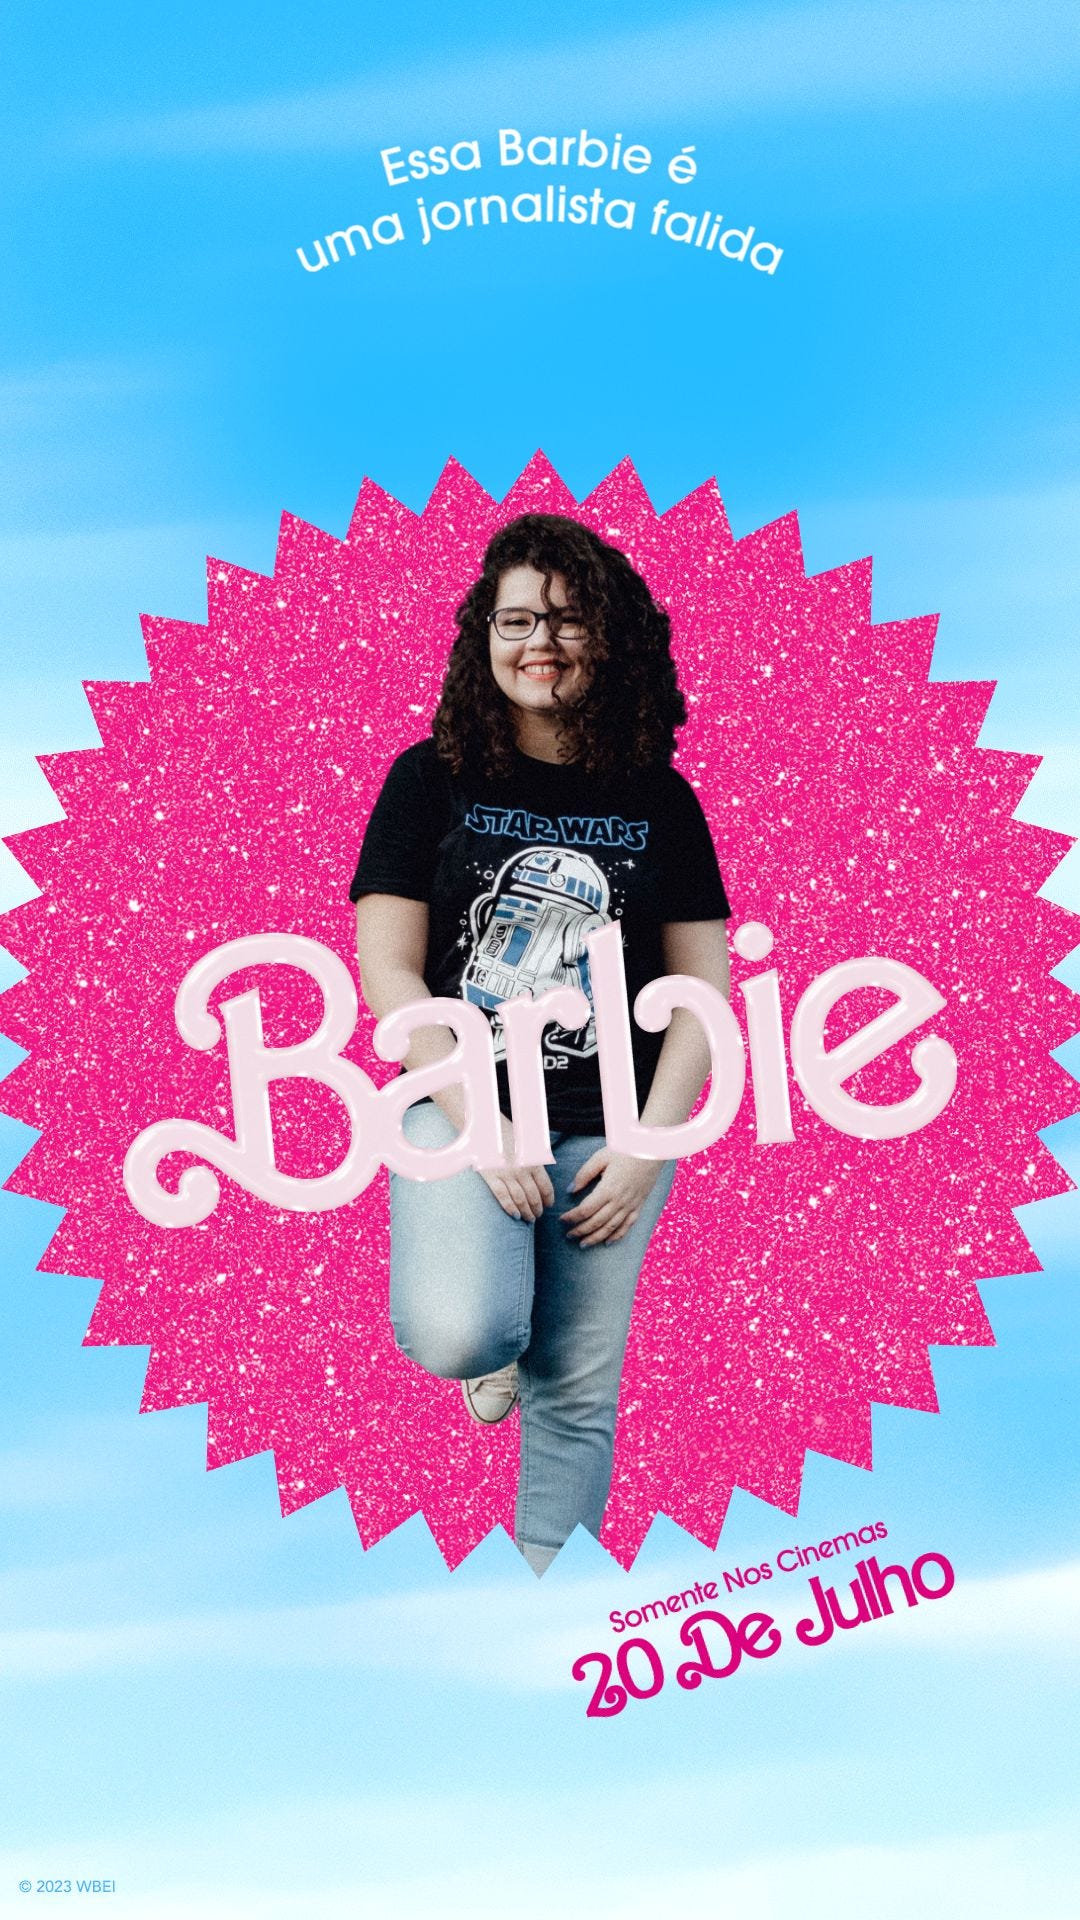 Imagem do poster do filme Barbie. Eu estou no centro sorrindo, atrás há um círculo rosa e a palavra Barbie está escrita. No topo da imagem, a legenda "essa Barbie é uma jornalista falida"